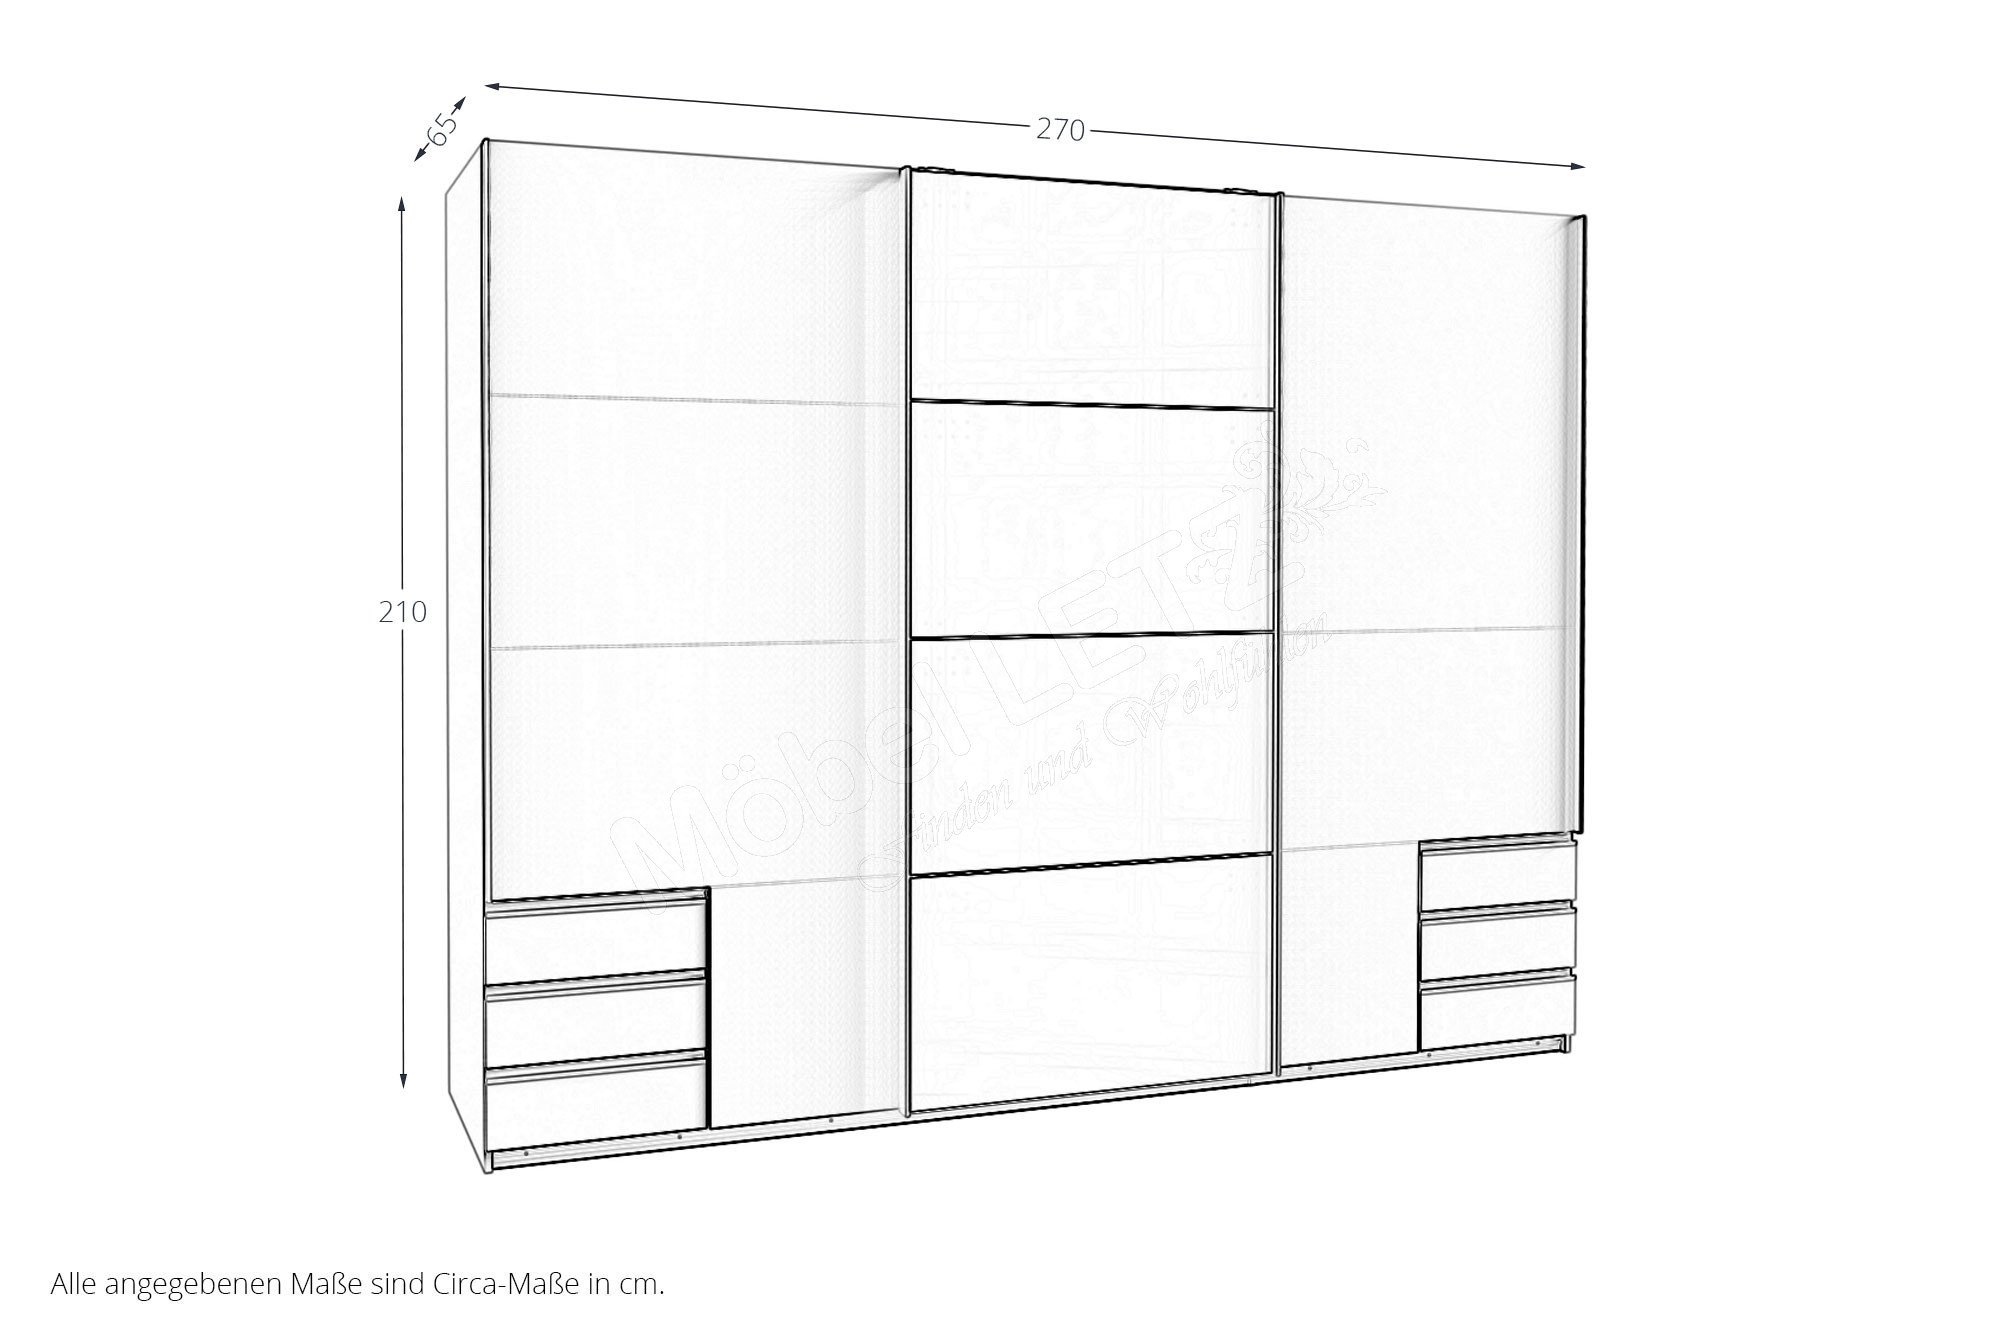 Wimex Schlafzimmer Valencia in Weiß mit grau | Möbel Letz - Ihr Online-Shop